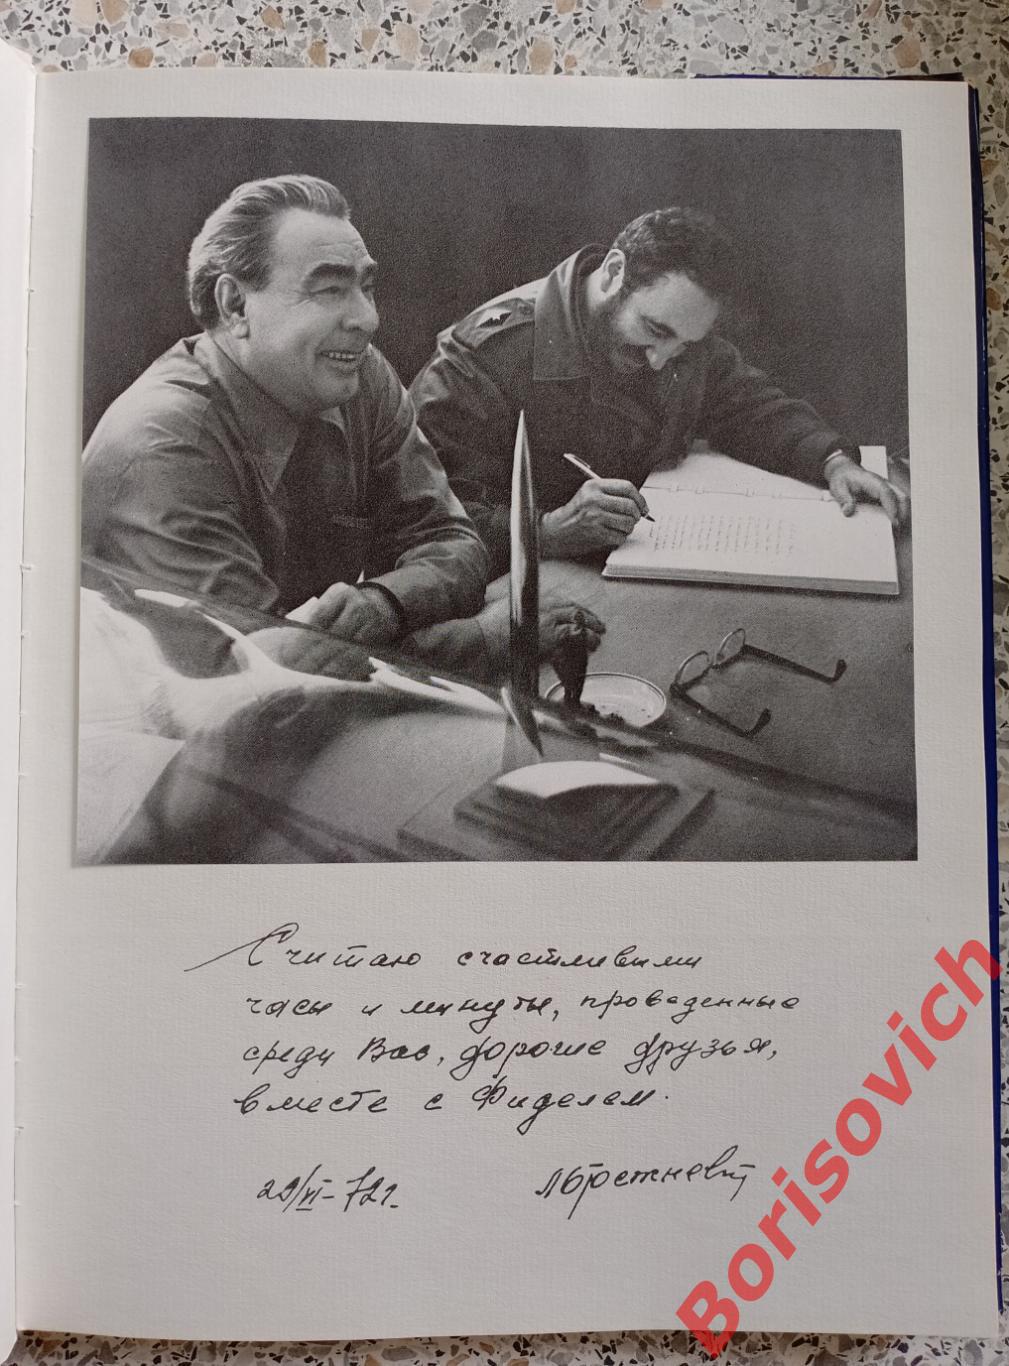 ЗВЁЗДНЫЙ ГОРОДОК Под редакцией В. А. Шаталова и Г. Т. Берегового 1977 г 3